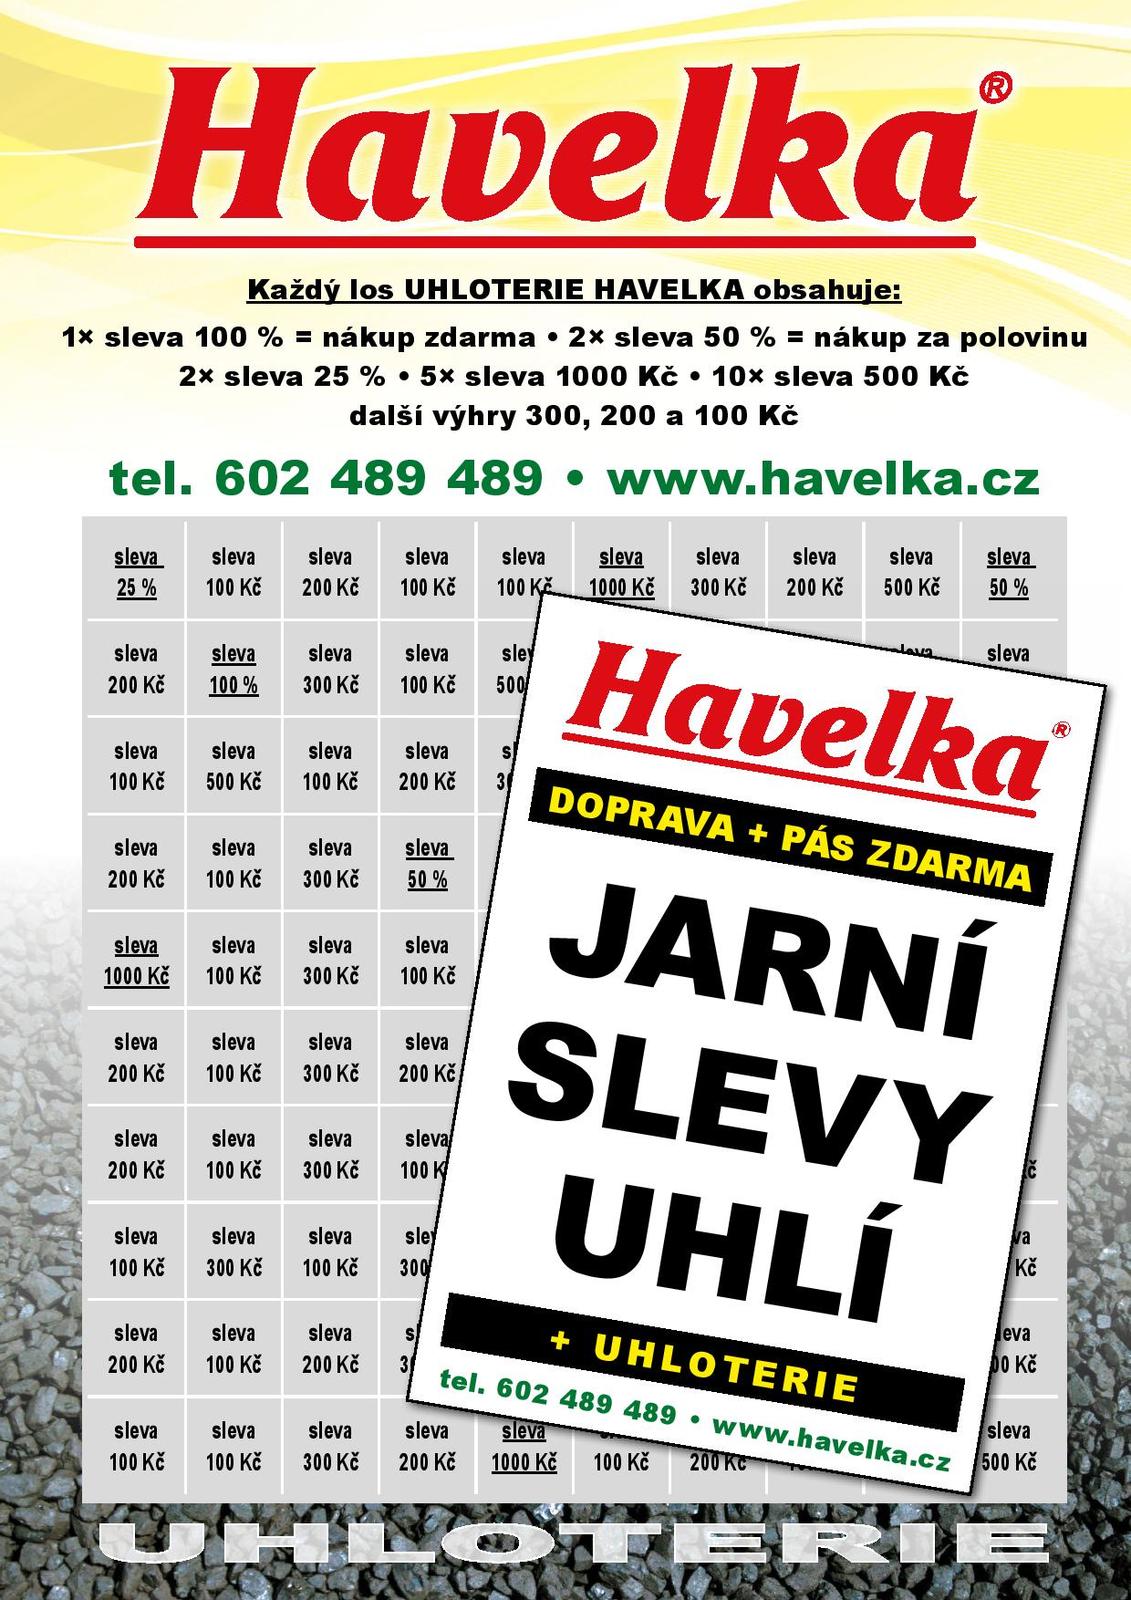 Havelka - leták A4 duben 2021 - Jarní slevy+los-page-001.jpg